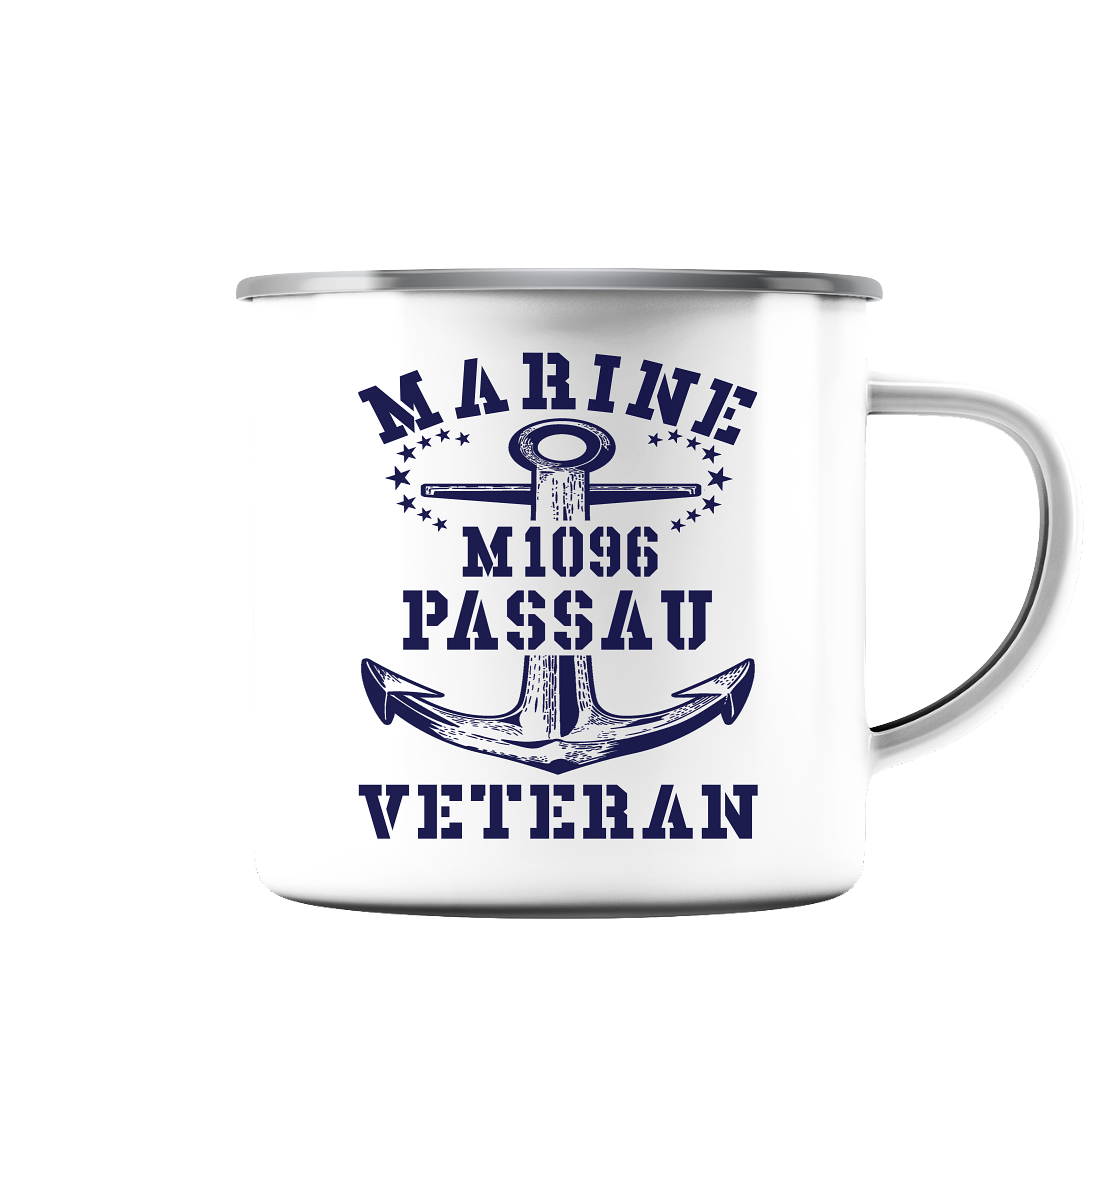 M1096 PASSAU Marine Veteran - Emaille Tasse (Silber)